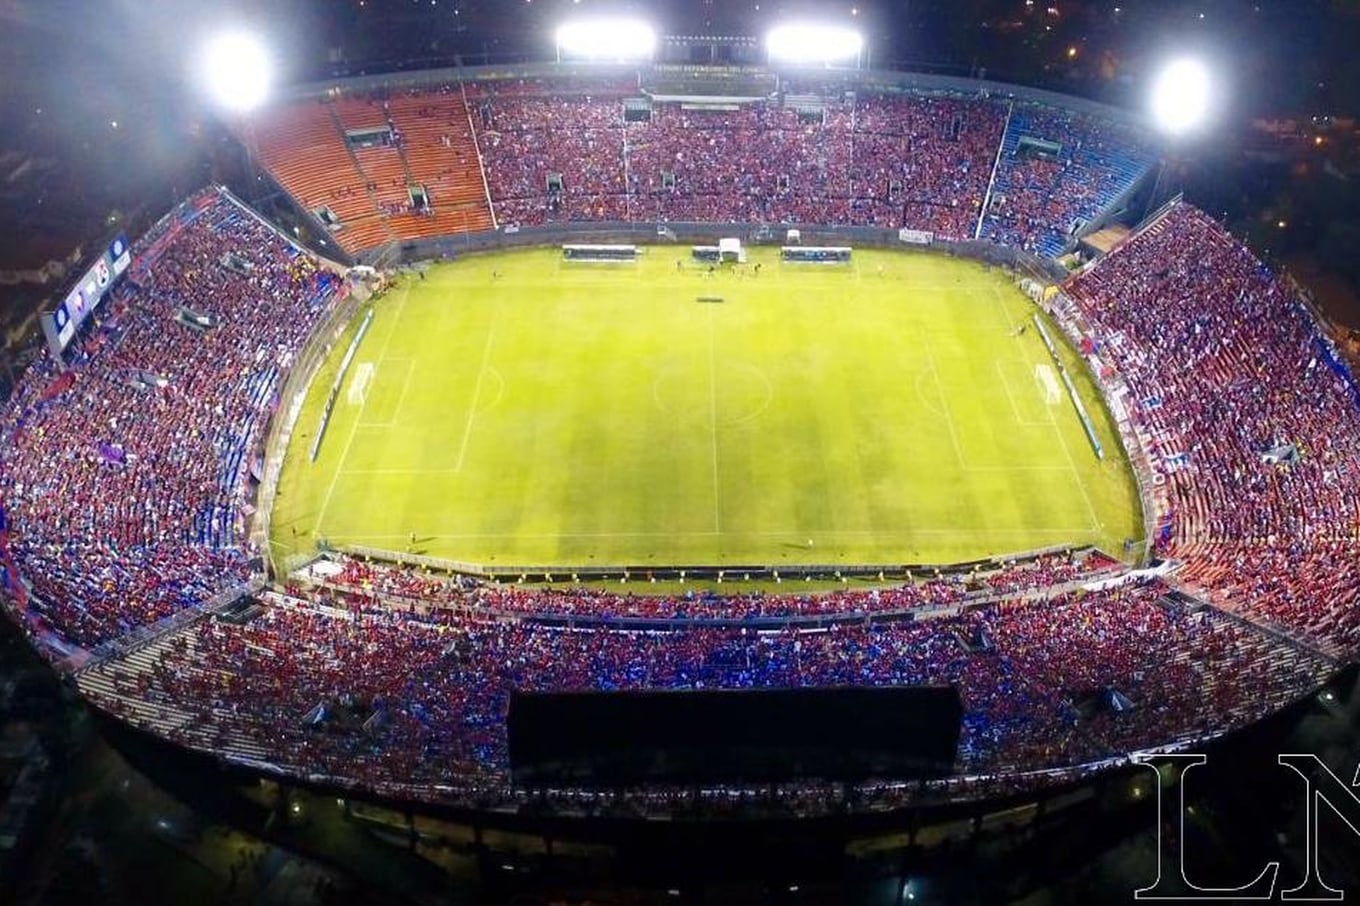 Impresionante se muestra el estadio Defensores del Chaco, previo al juego copero. Foto: Carlos Juri